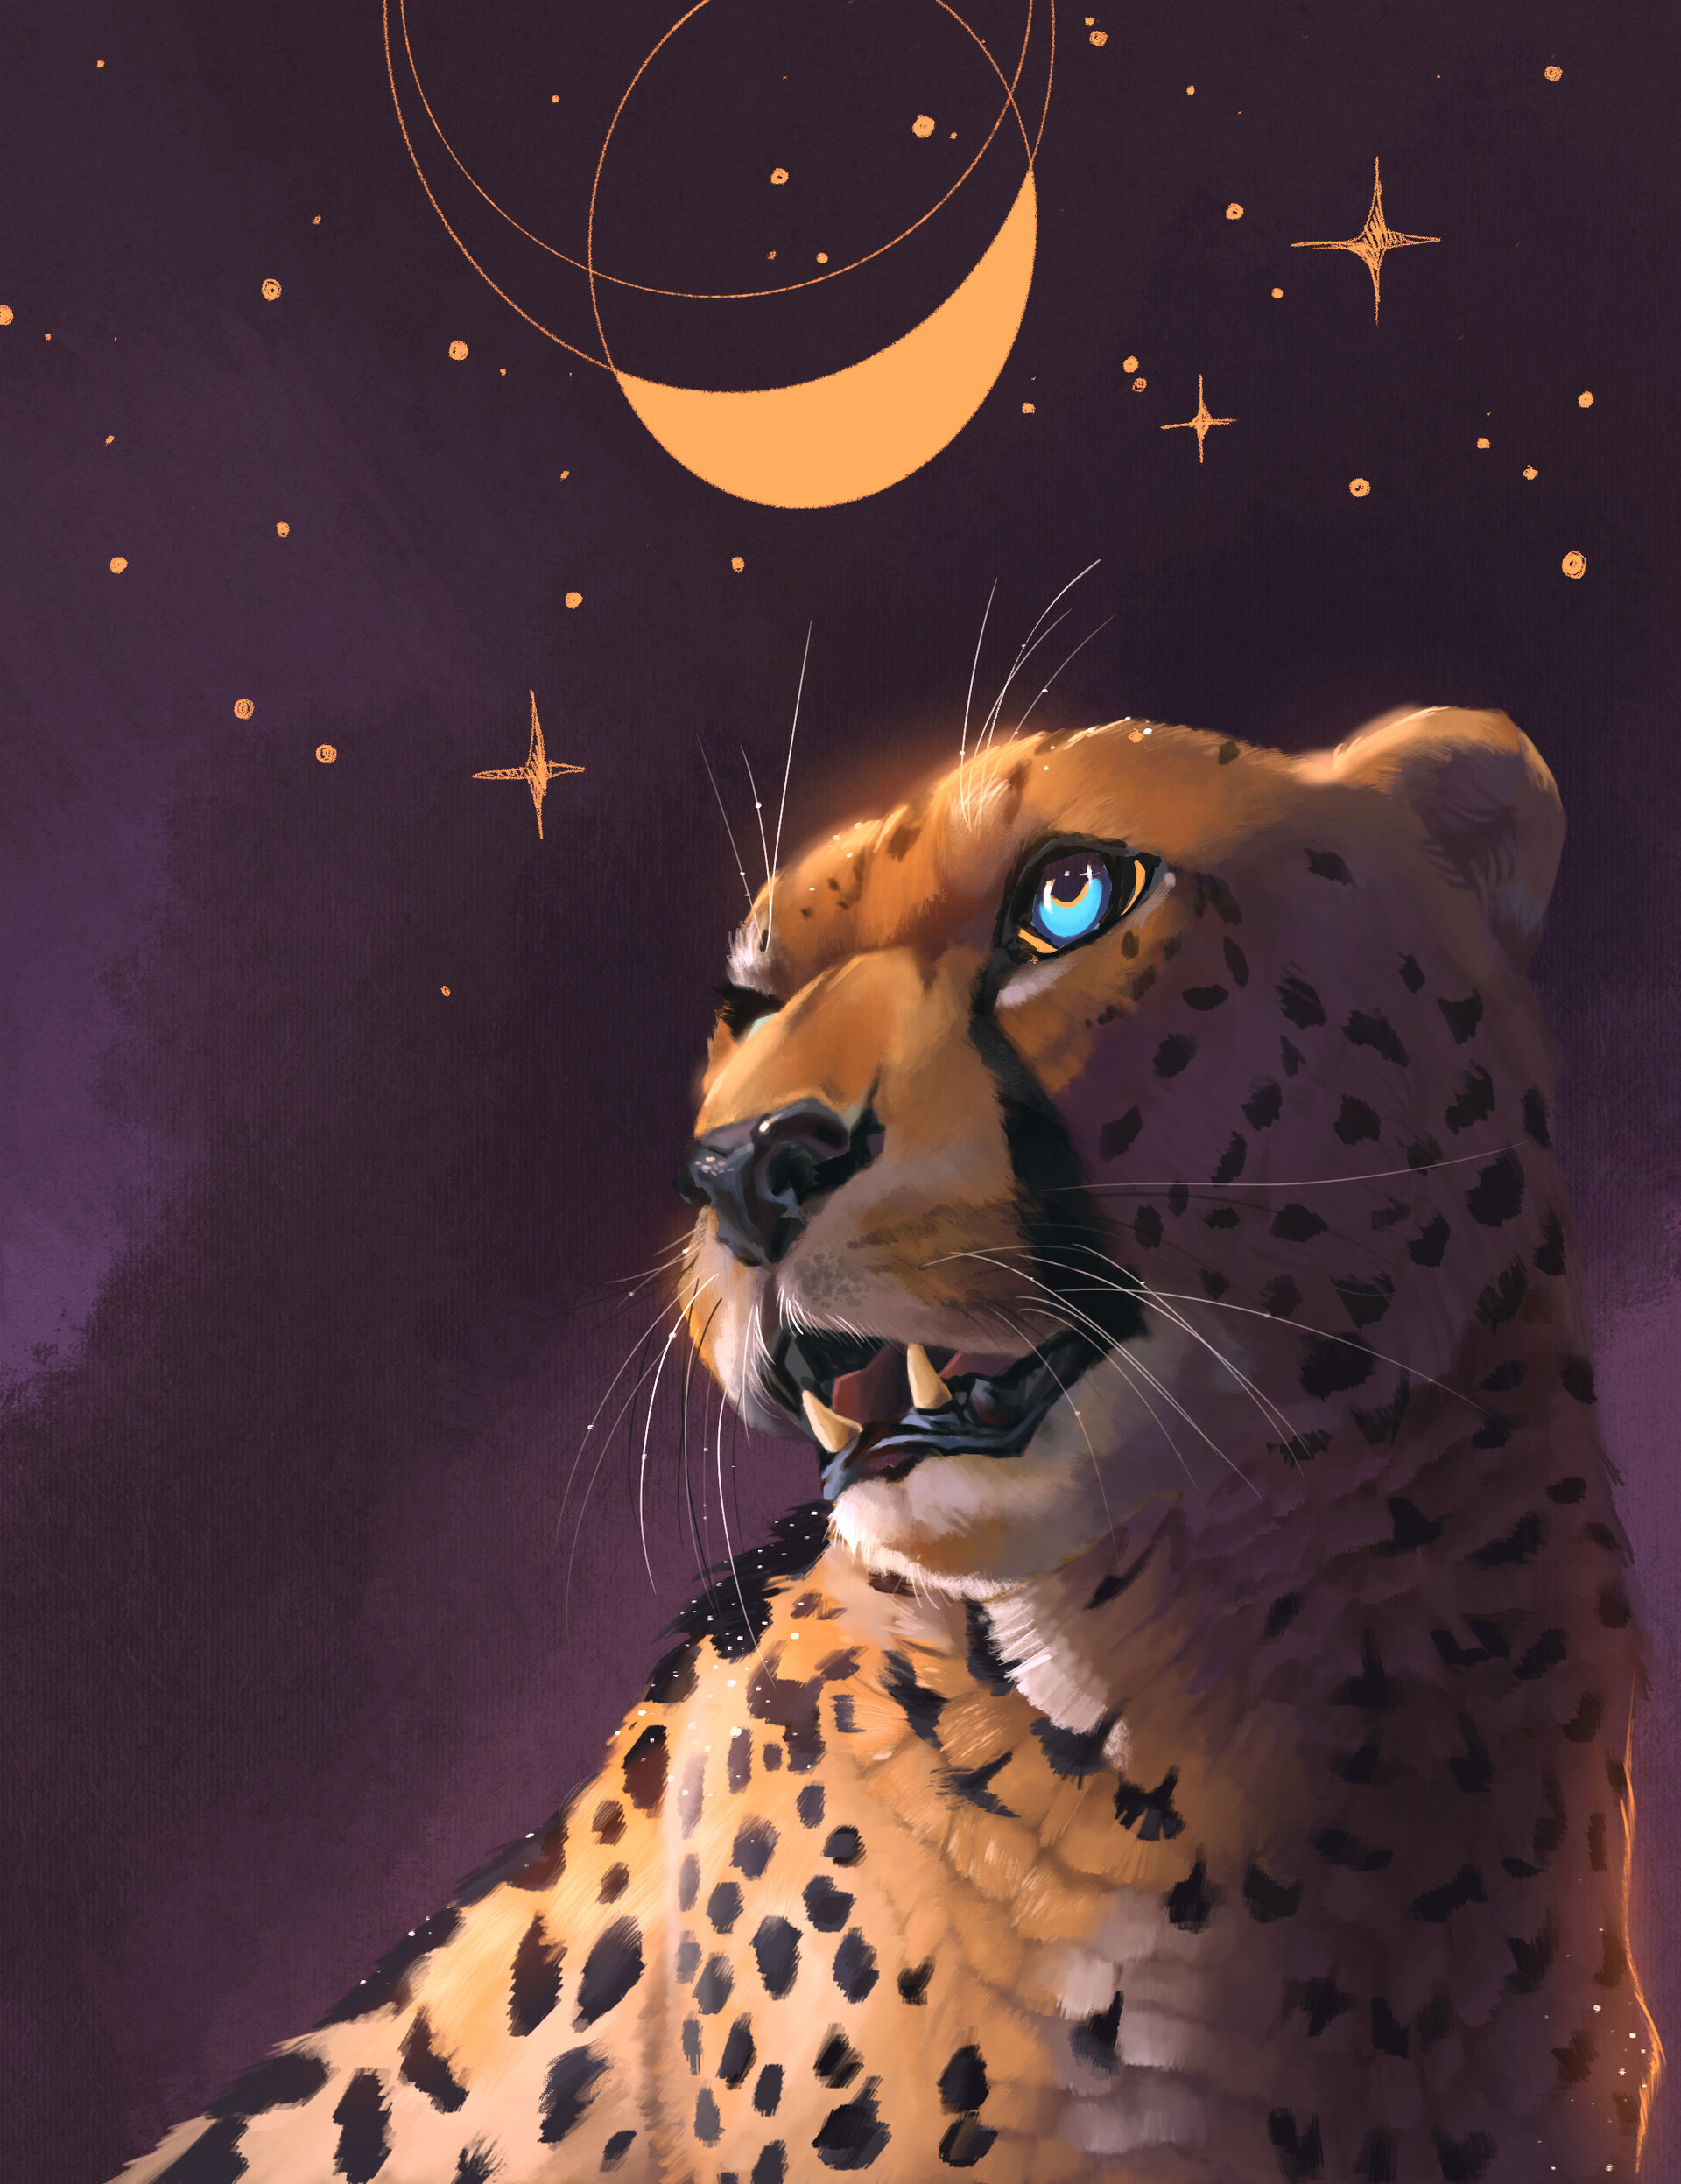 Фото Голубоглазый леопард стоит на фоне ночного неба со звездами и месяцем